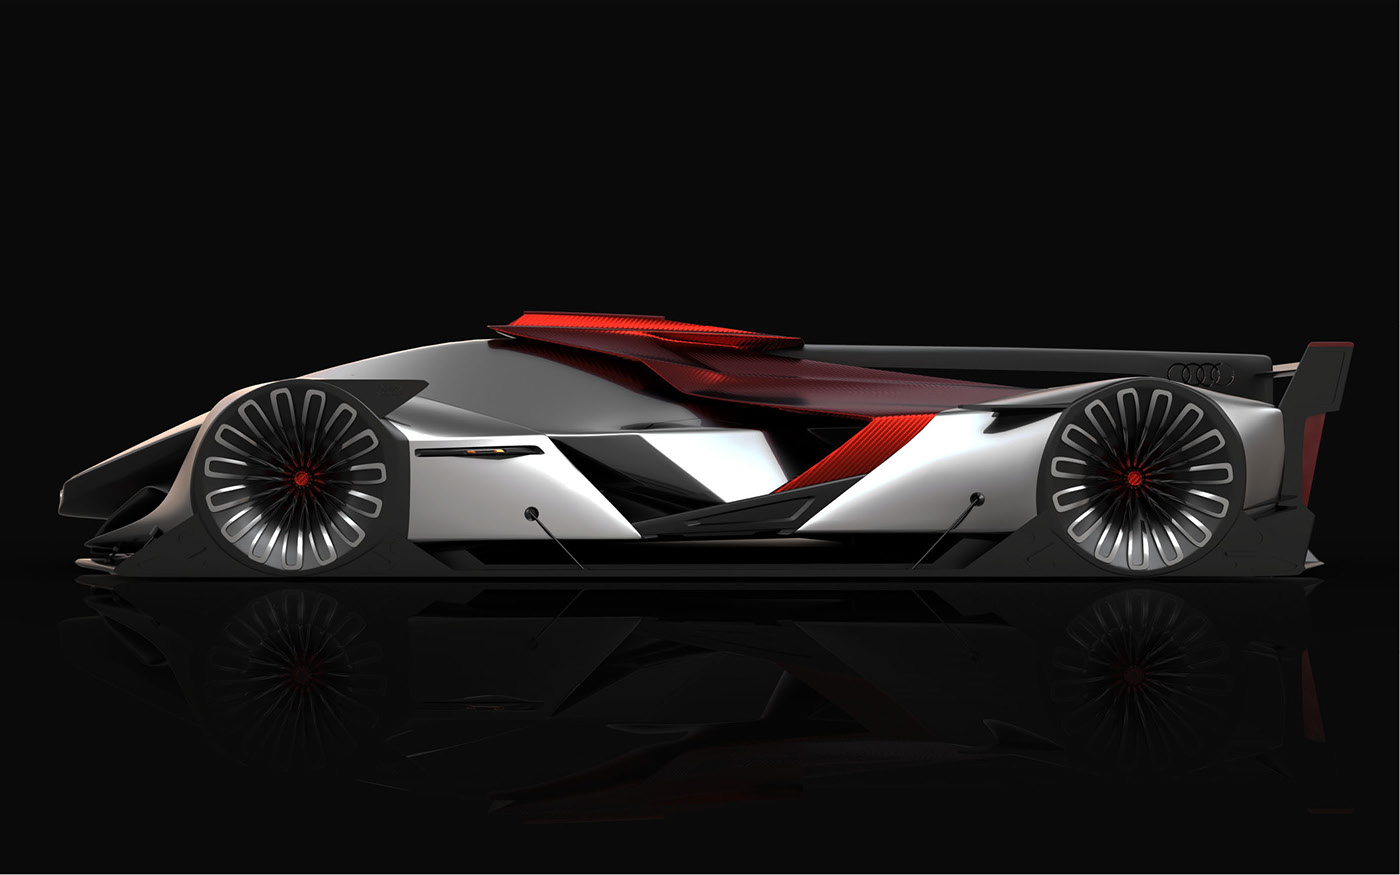 Audi le mans daniel platek car design future vision